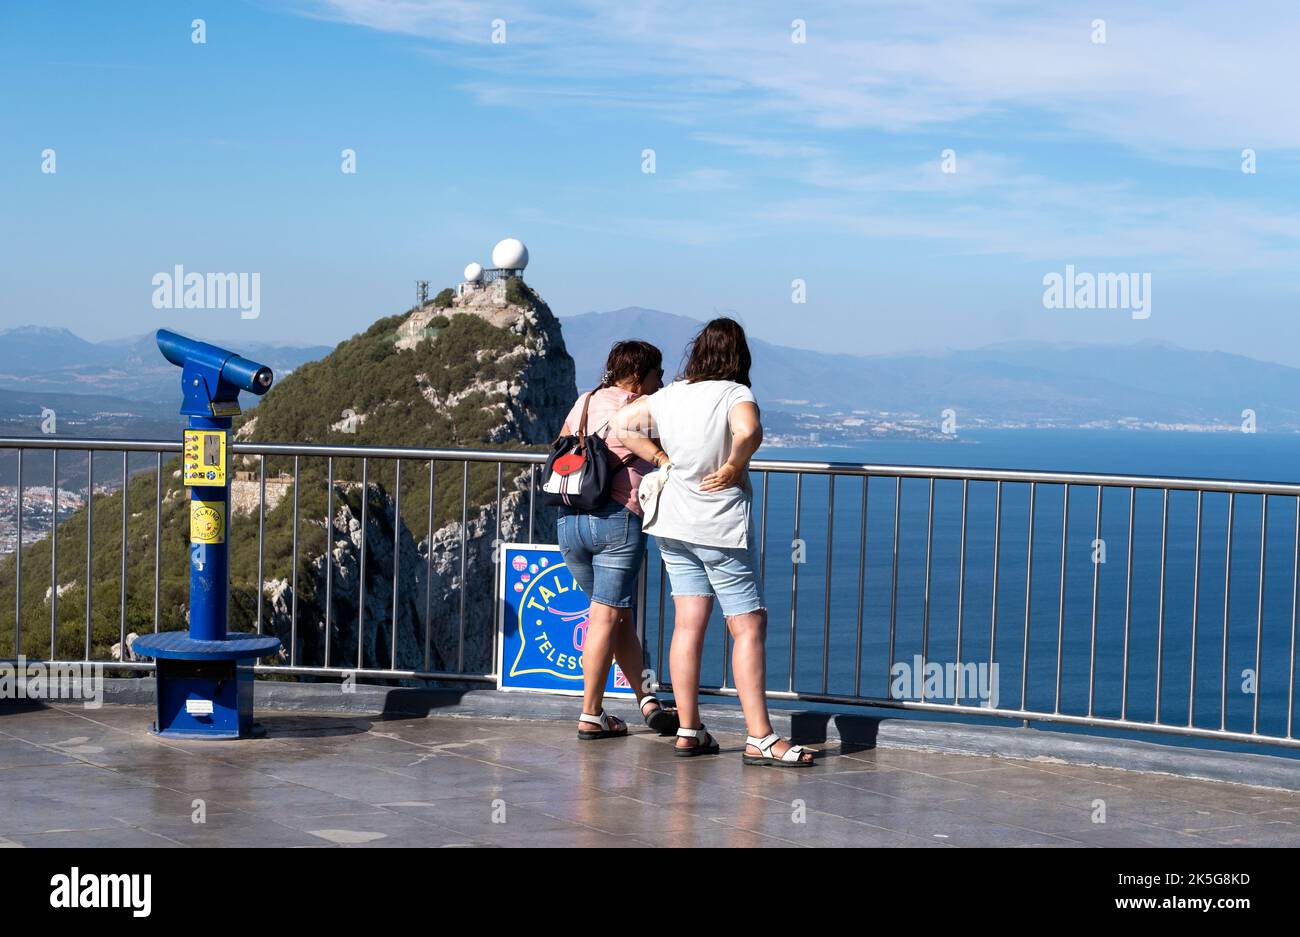 Touristes sur la plate-forme d'observation à la station de Cable car, qui est située sur la réserve naturelle d'Upper Rock à Gibraltar. Banque D'Images